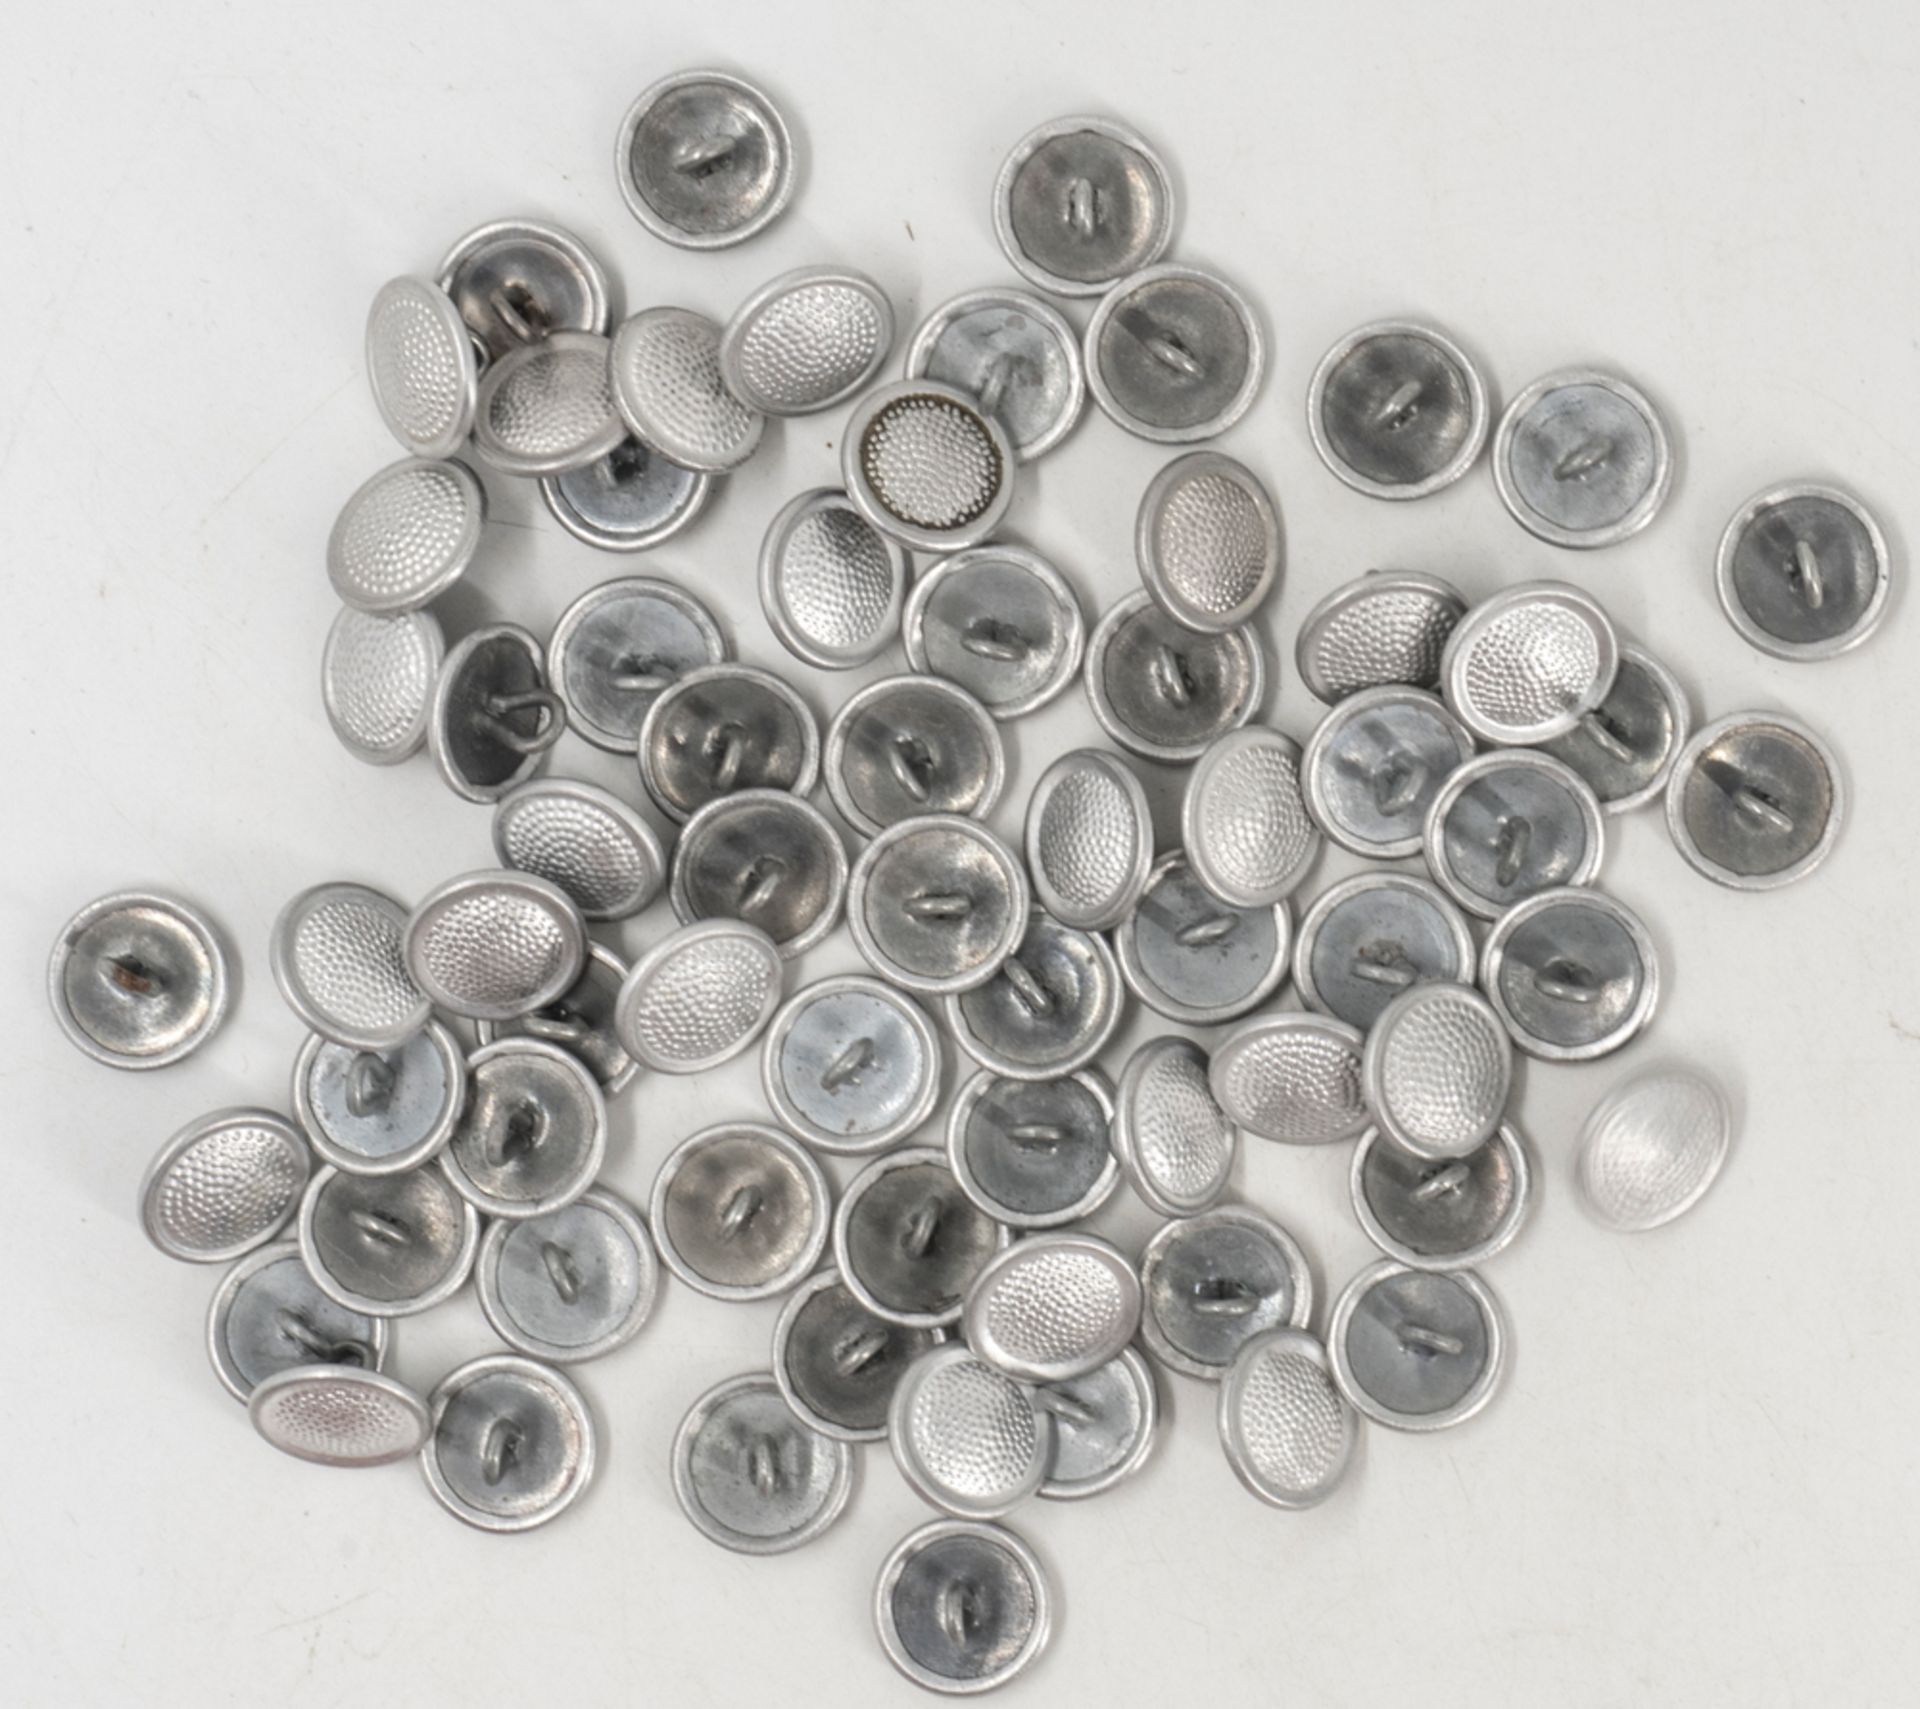 Lot Uniformknöpfe der NVA, Silber, Metall, Durchmesser: 12 mm. 70 Stück.